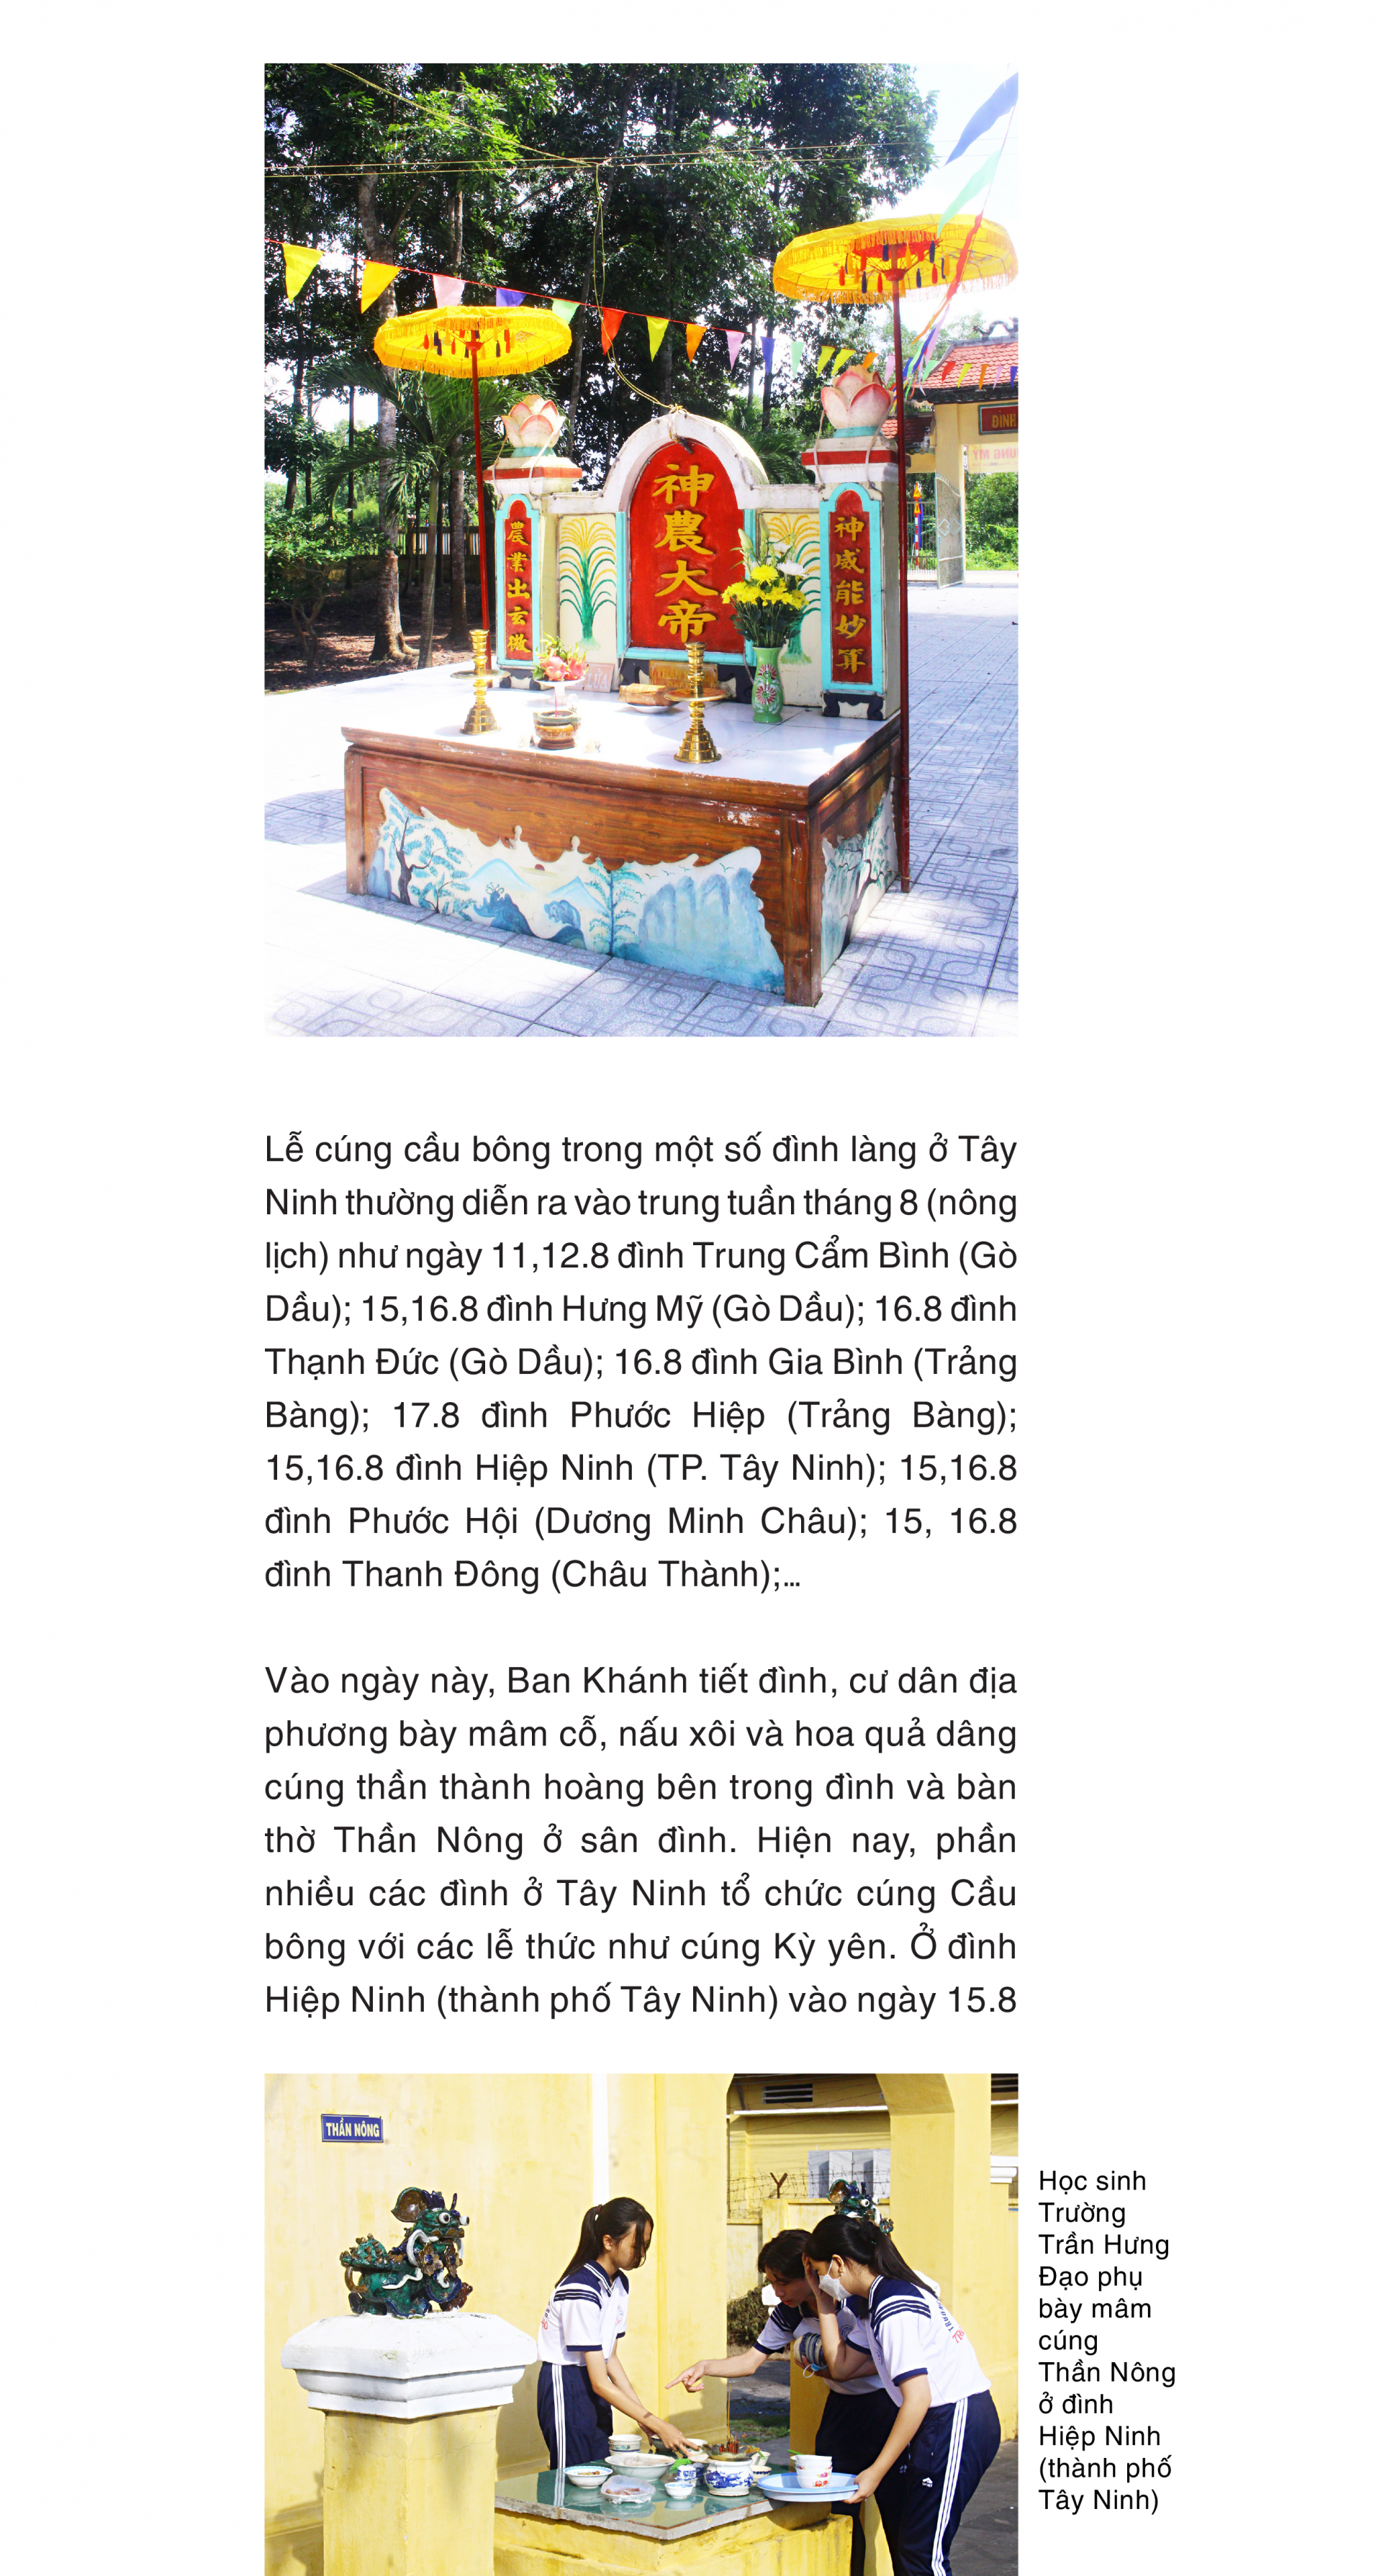 Lễ cúng cầu bông trong đình làng Tây Ninh